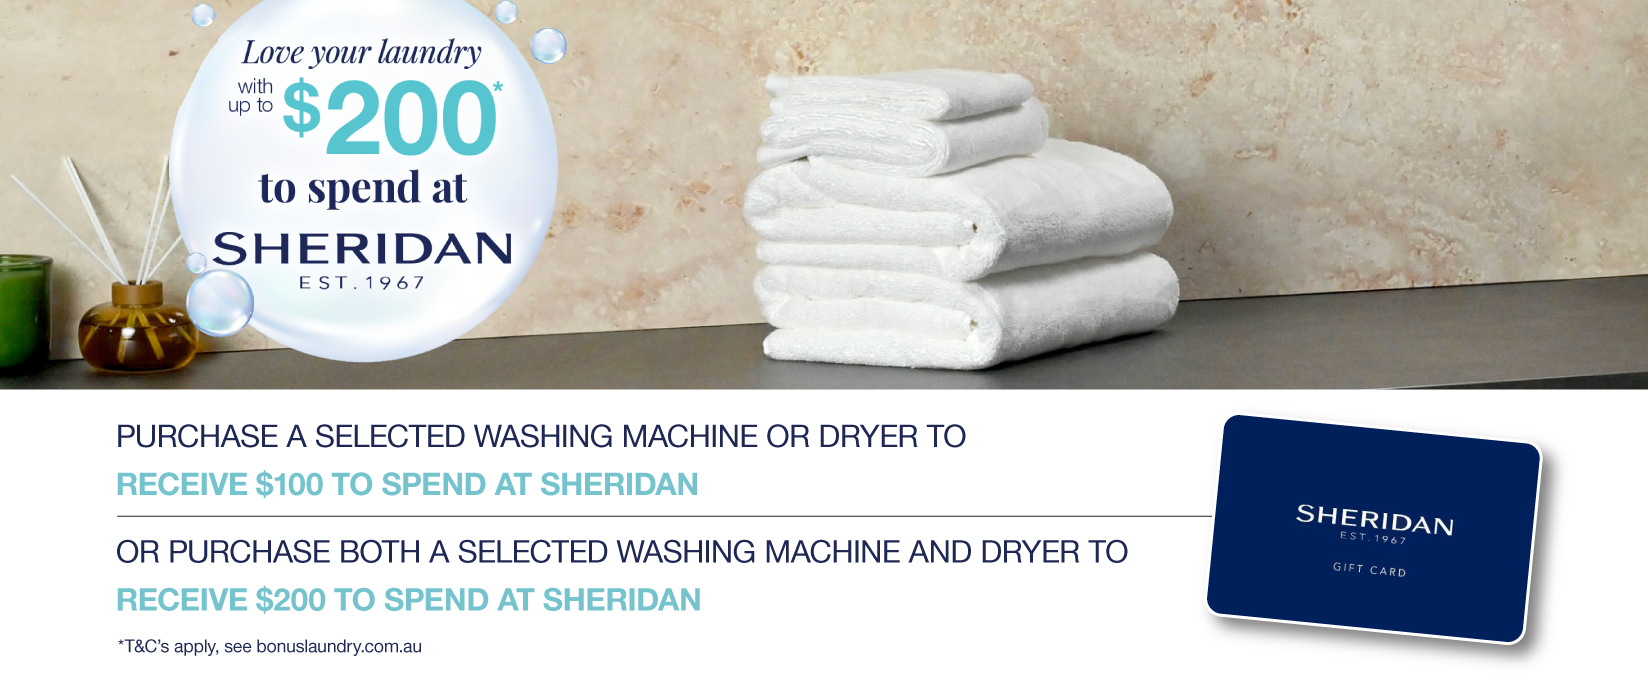 Bonus Sheridan Gift Card Valued at up to $200 on selected Laundry at Retravision